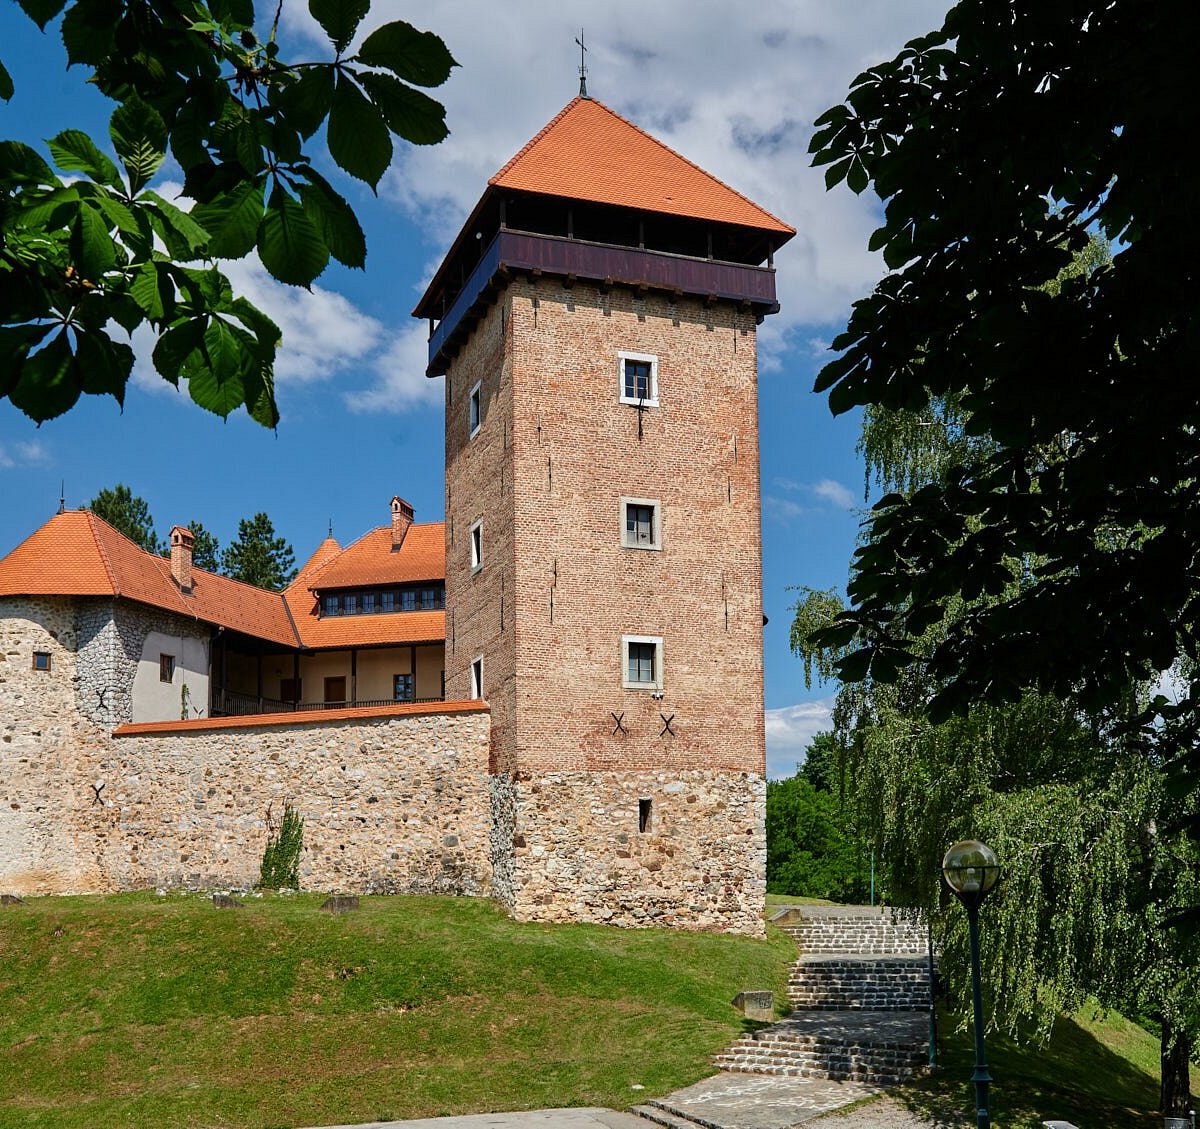 Dubovac Castle, Карловац: просмотрите отзывы (68 шт.), статьи и 93 фотограф...